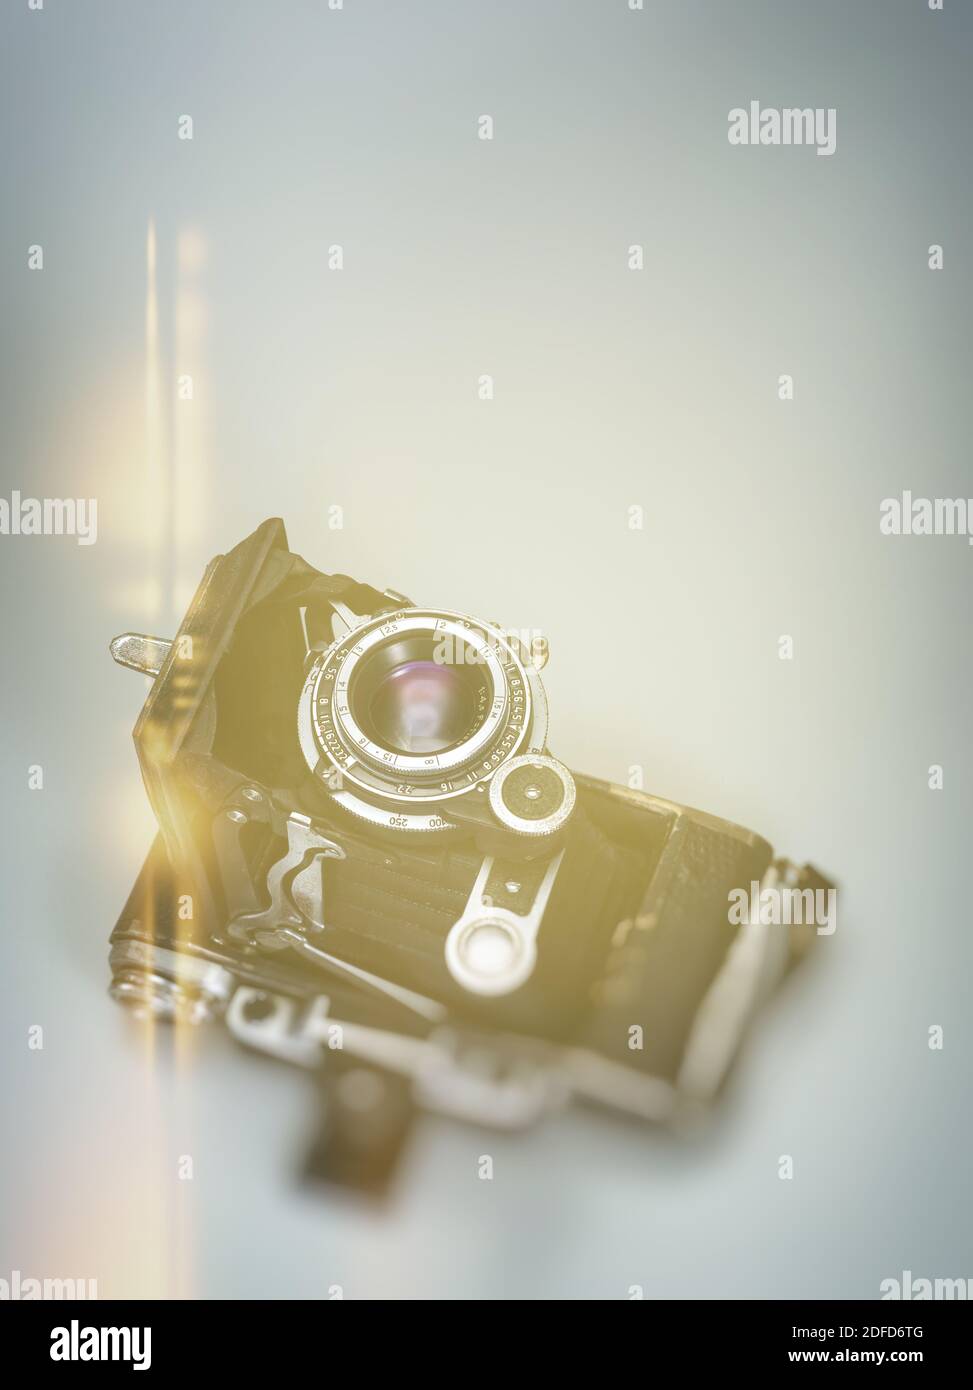 Armaturenbrett display auto -Fotos und -Bildmaterial in hoher Auflösung –  Alamy